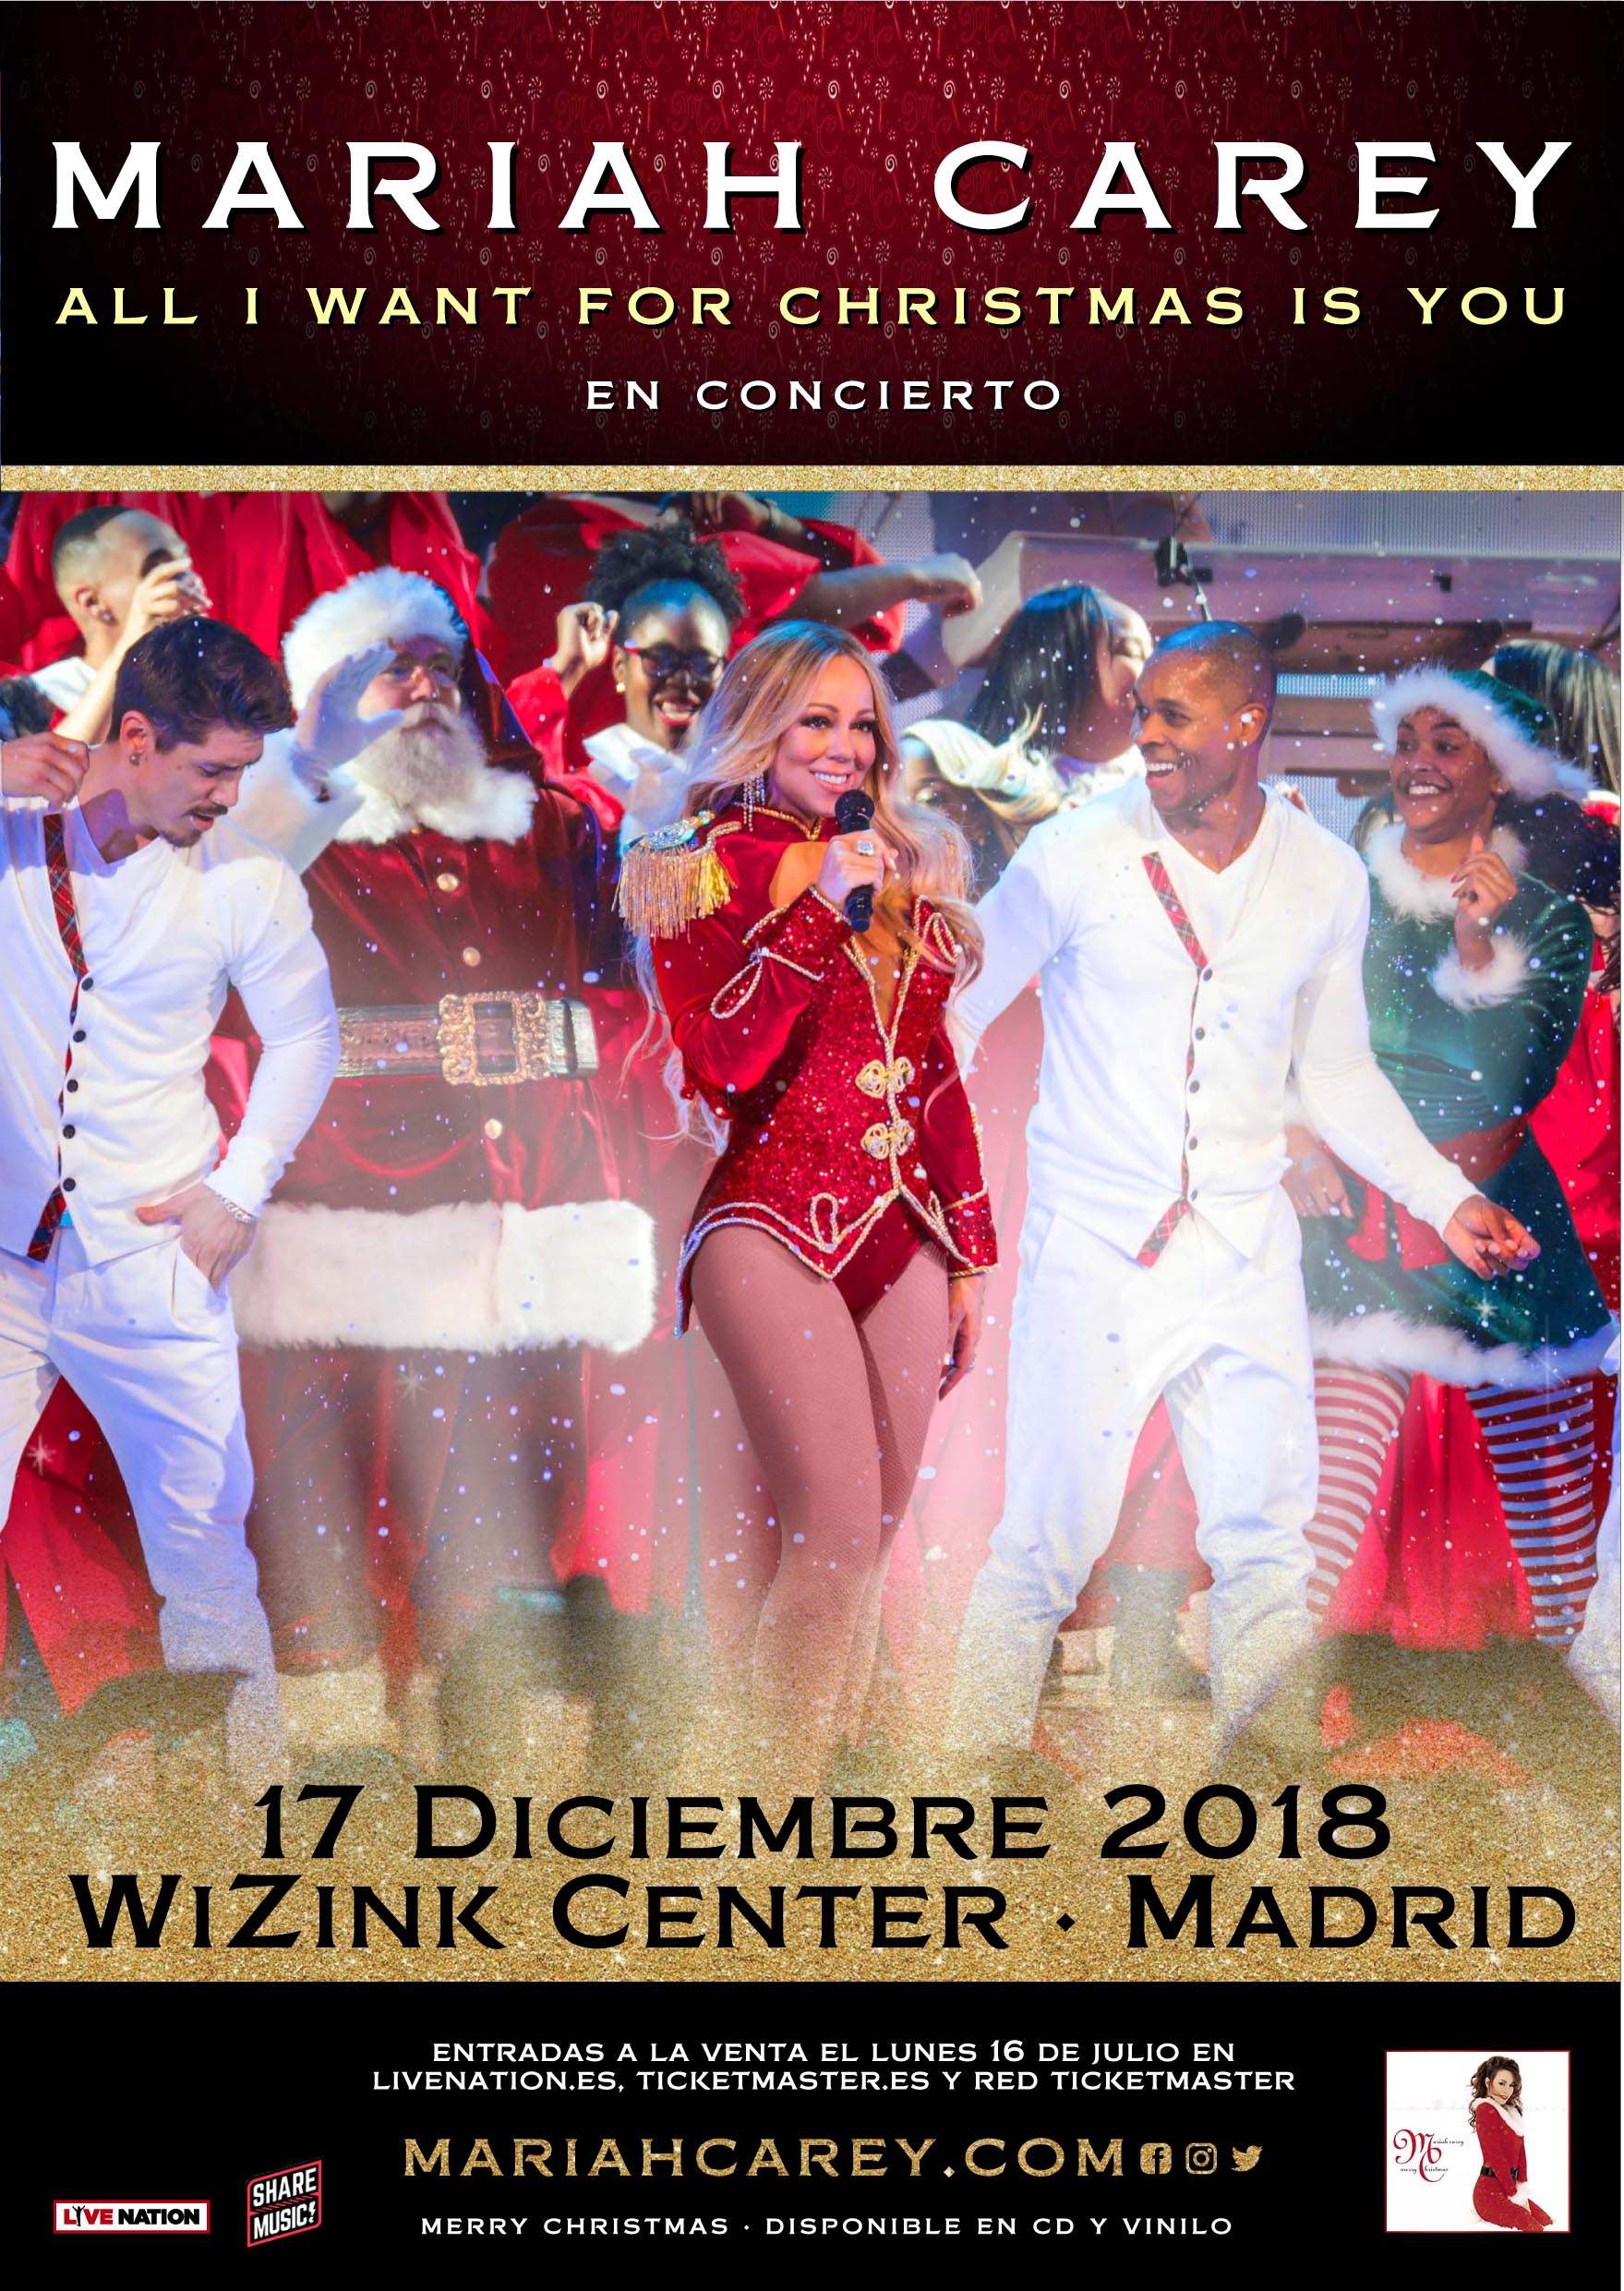 Mariah Carey anuncia un concierto en Madrid dentro de su gira ‘All I Want For Christmas Is You Tour’